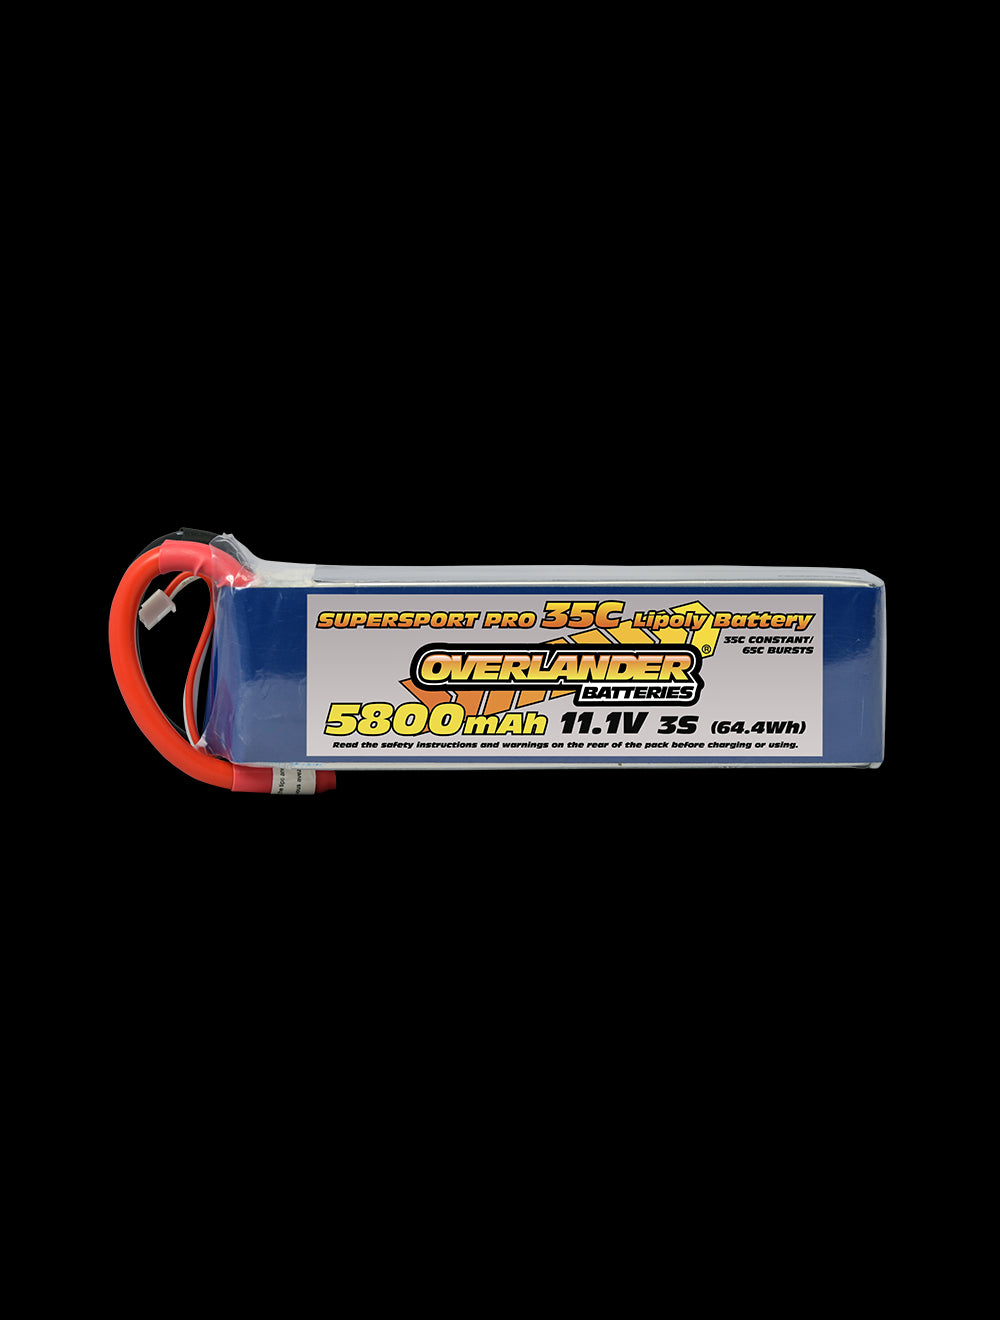 Overlander 5800mAh 11.1V 3S 35C Supersport Pro LiPo Battery - EC5 Connector 3114